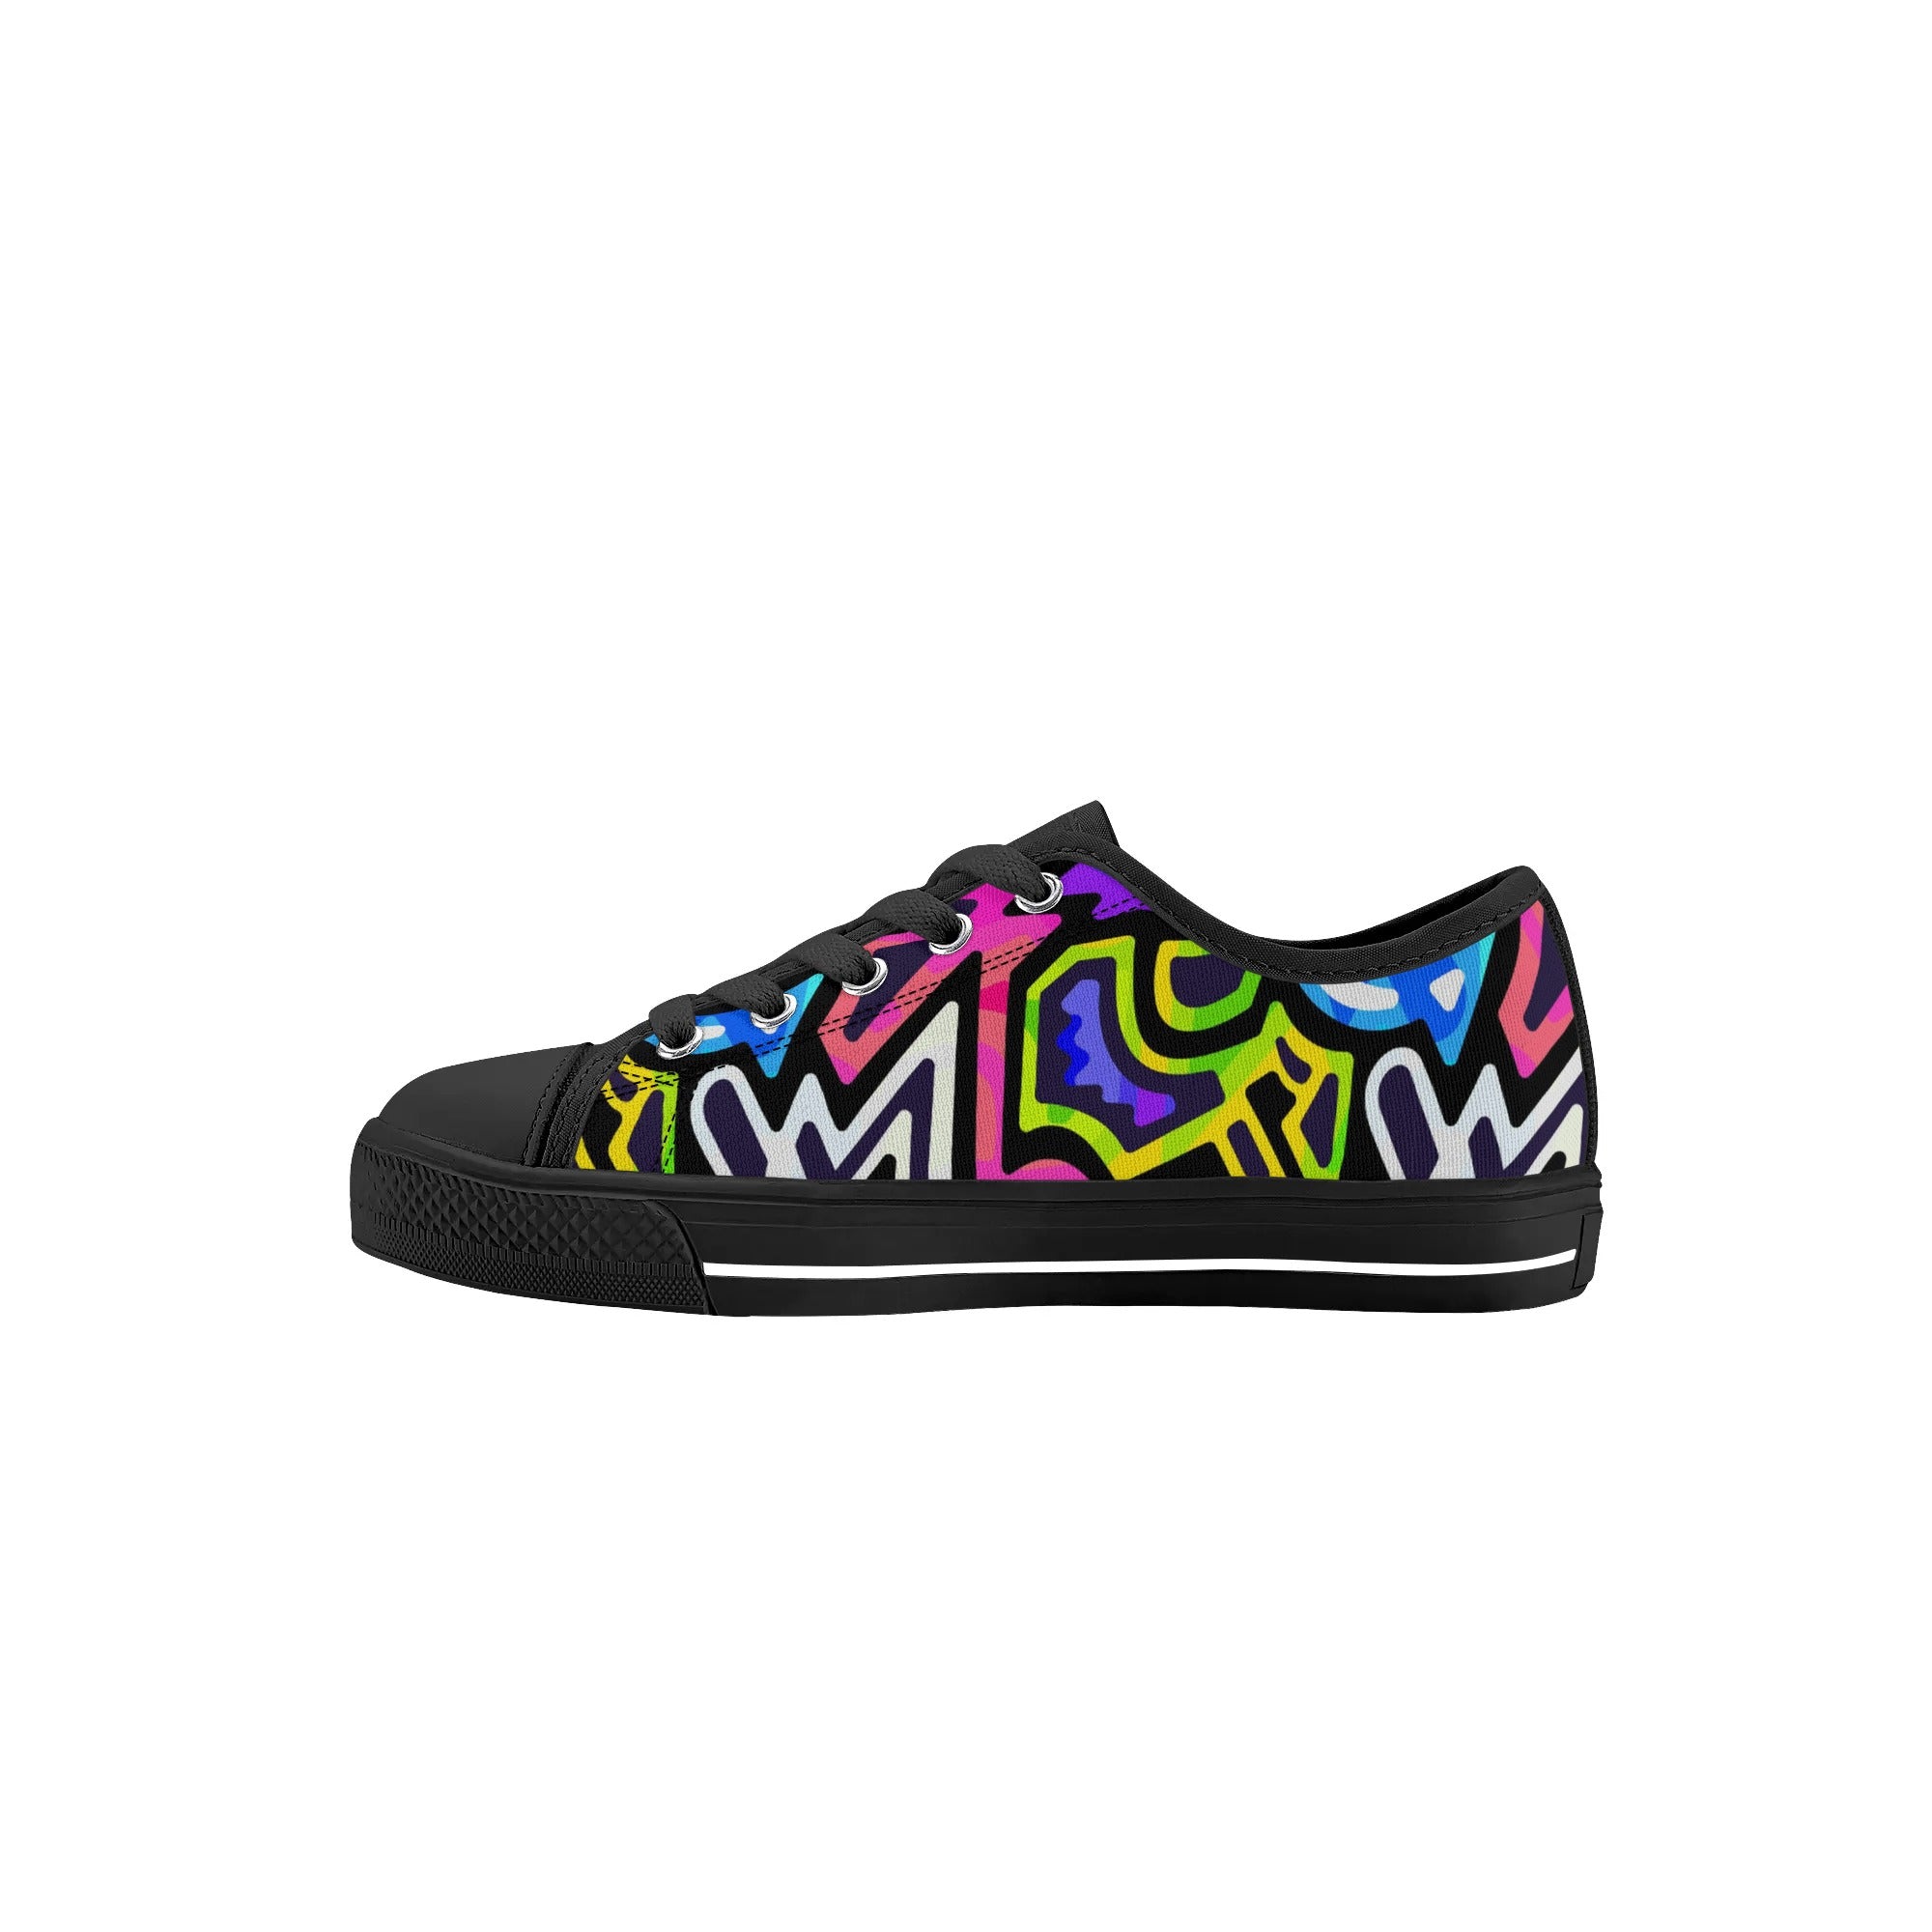 Chaussures basses en toile pour enfants - Neon Graffiti